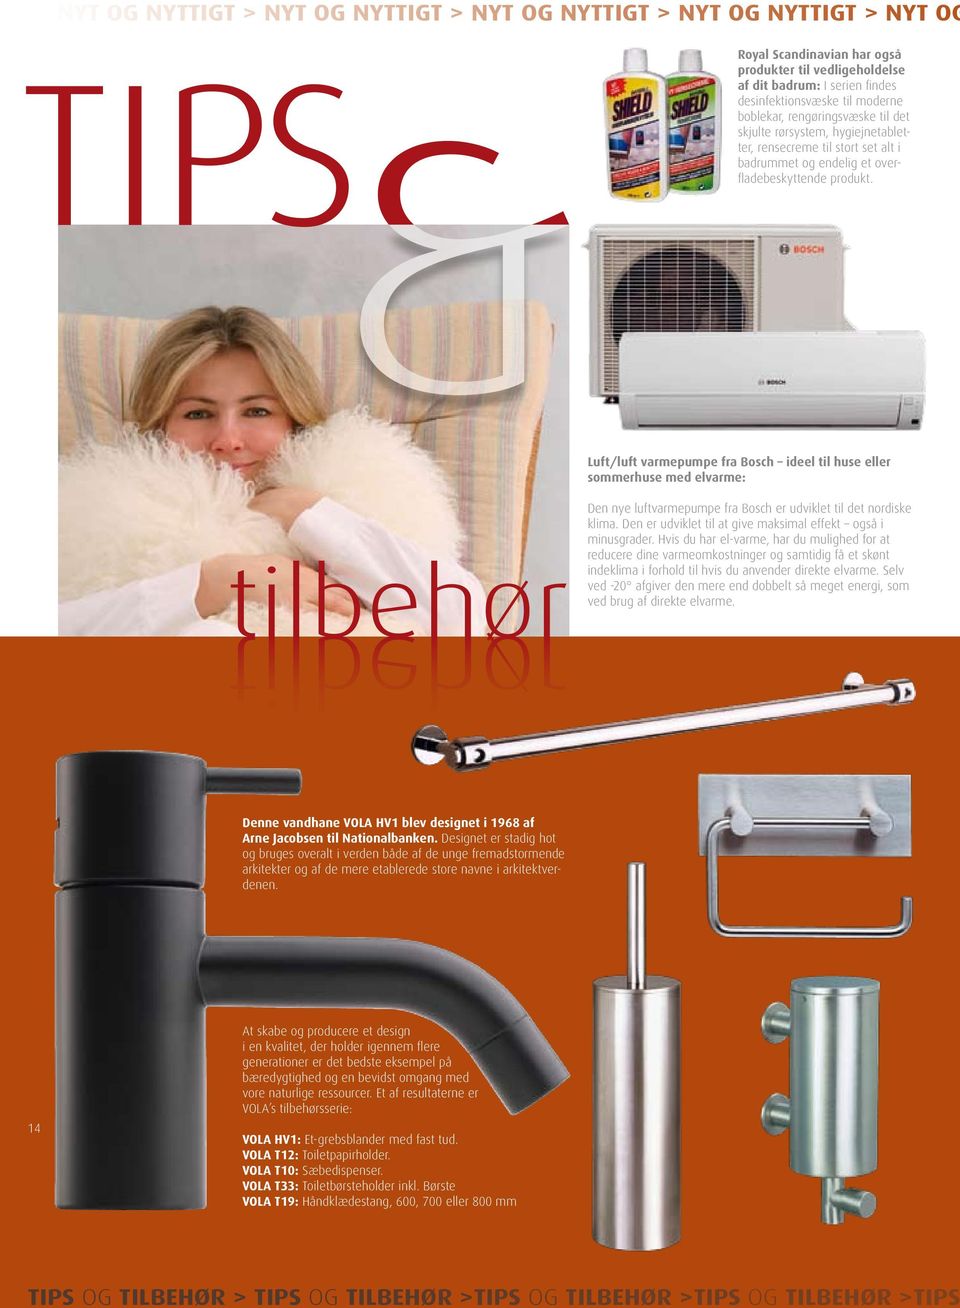 Luft/luft varmepumpe fra Bosch ideel til huse eller sommerhuse med elvarme: tilbehør tilbehør Den nye luftvarmepumpe fra Bosch er udviklet til det nordiske klima.